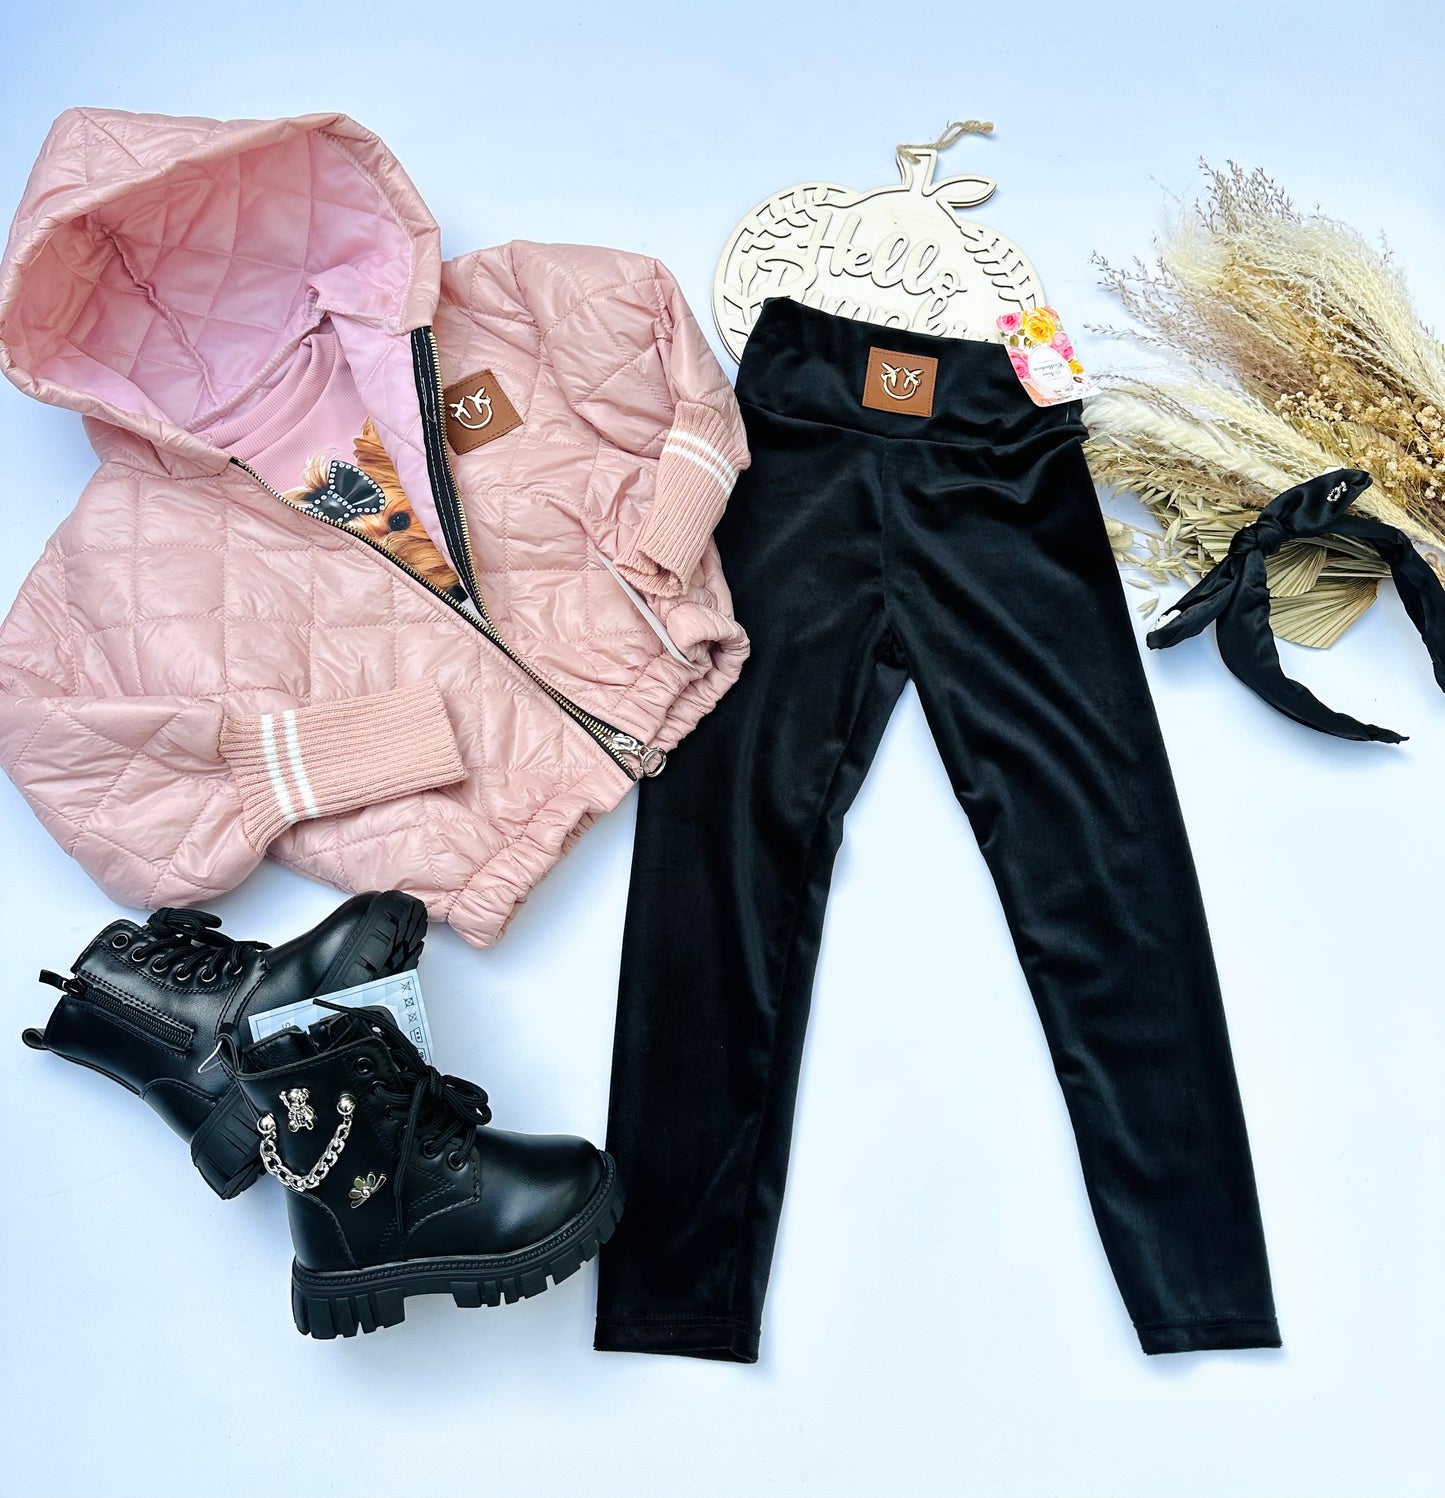 Pink autumn jacket